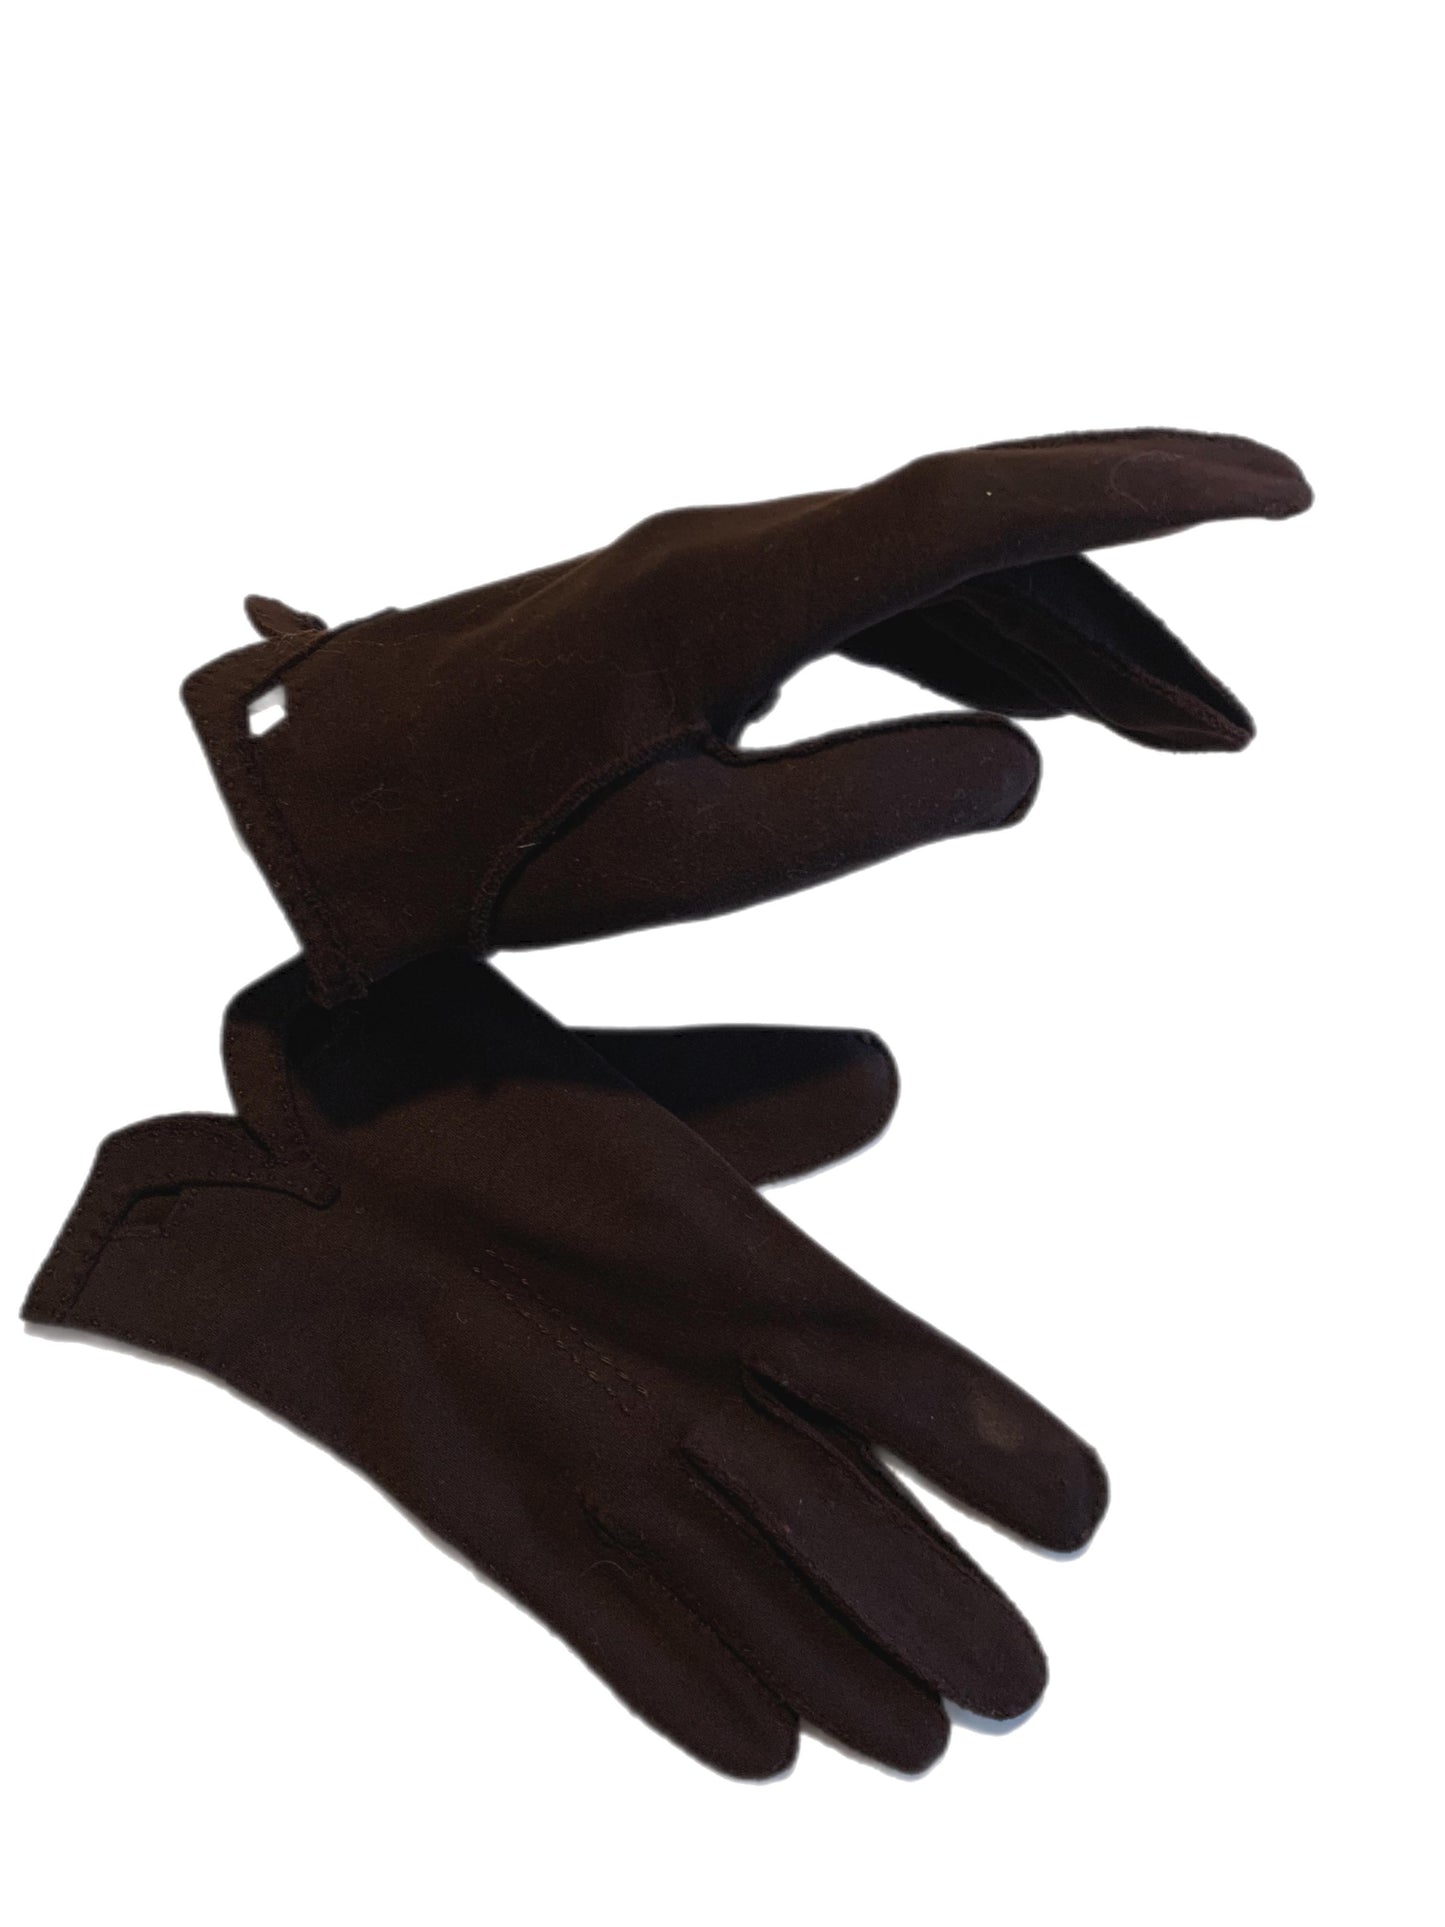 Cocoa Brown Wrist Length Gloves circa 1960s